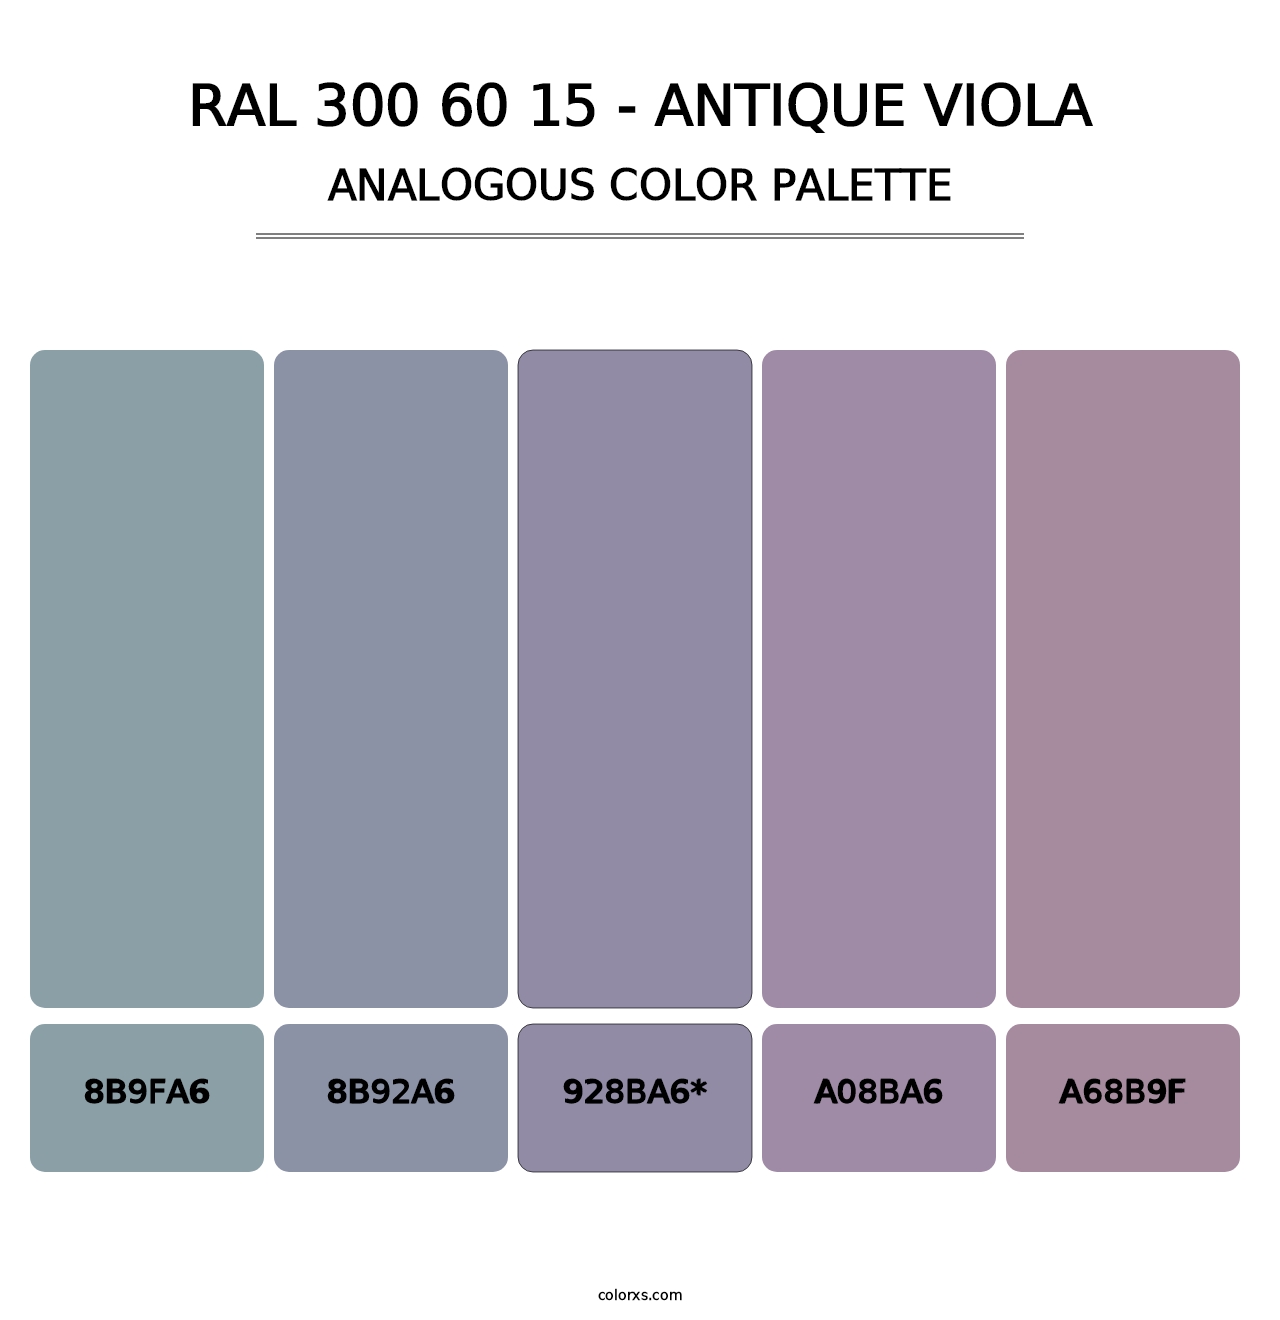 RAL 300 60 15 - Antique Viola - Analogous Color Palette